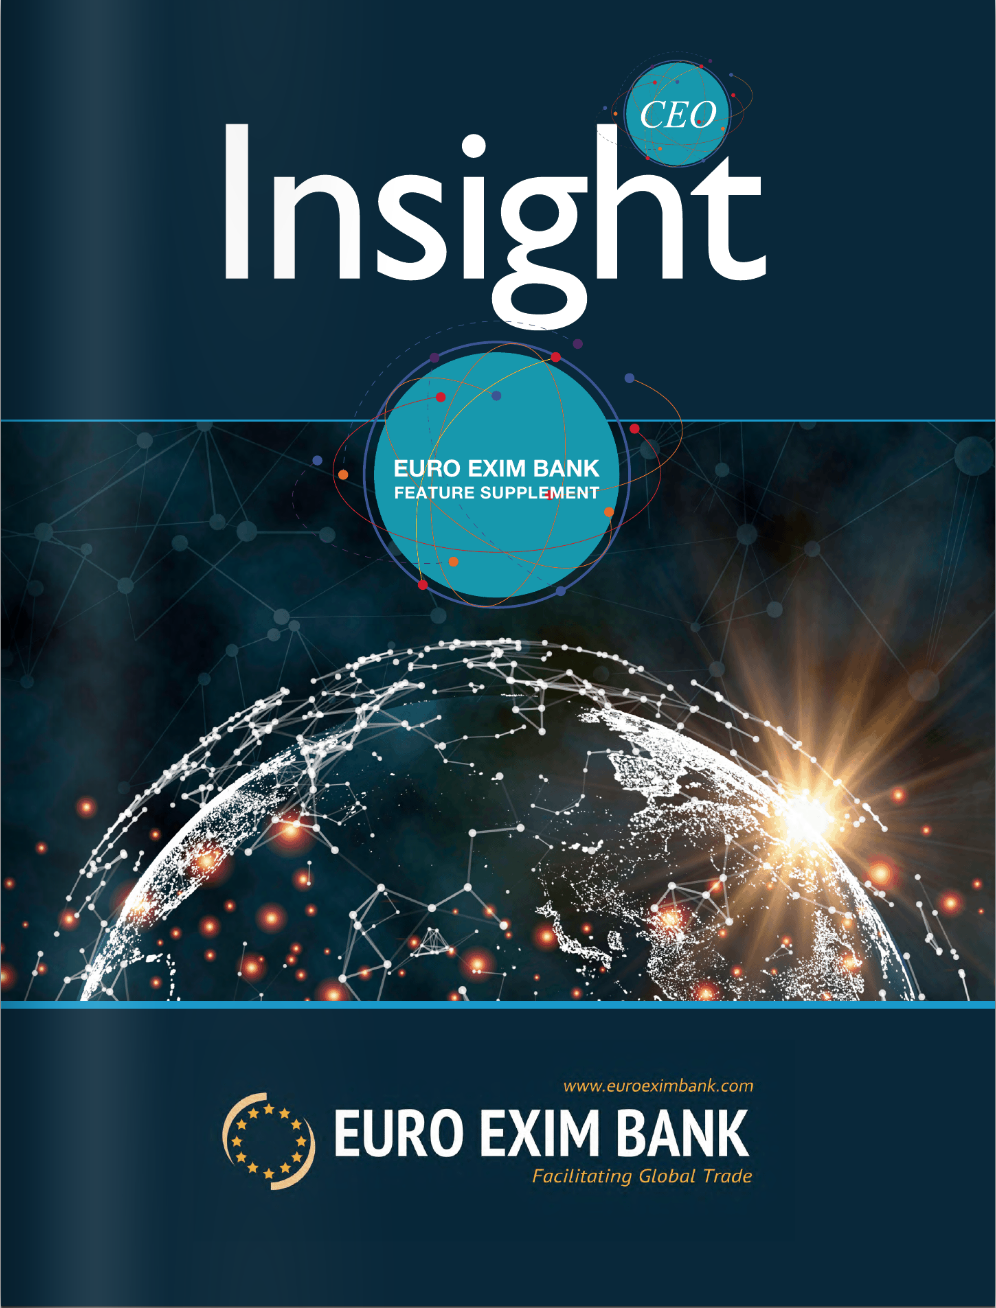 EURO EXIM BANK